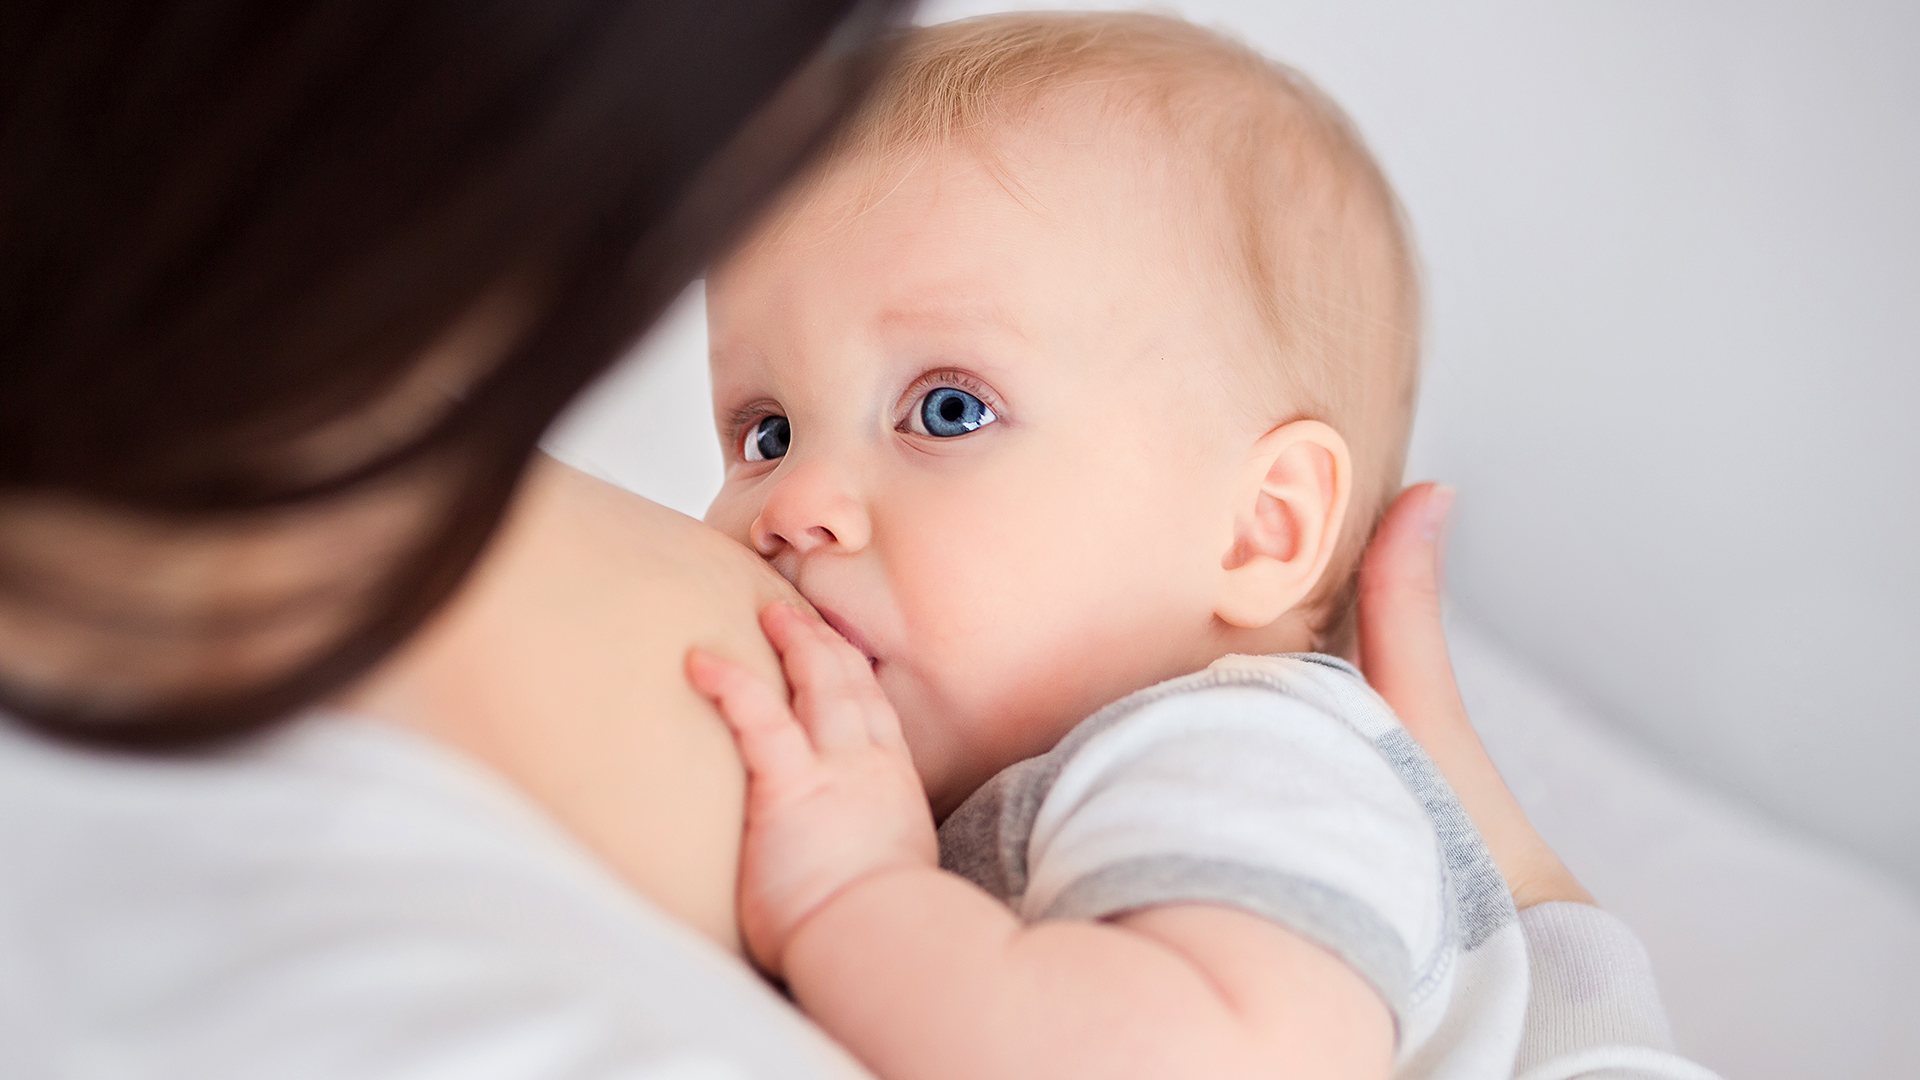 La lactancia materna crea una relación única entre madre e hijo la que reduce los efectos negativos relacionados con la cuarentena y el estrés debido a la pandemia
(iStock)